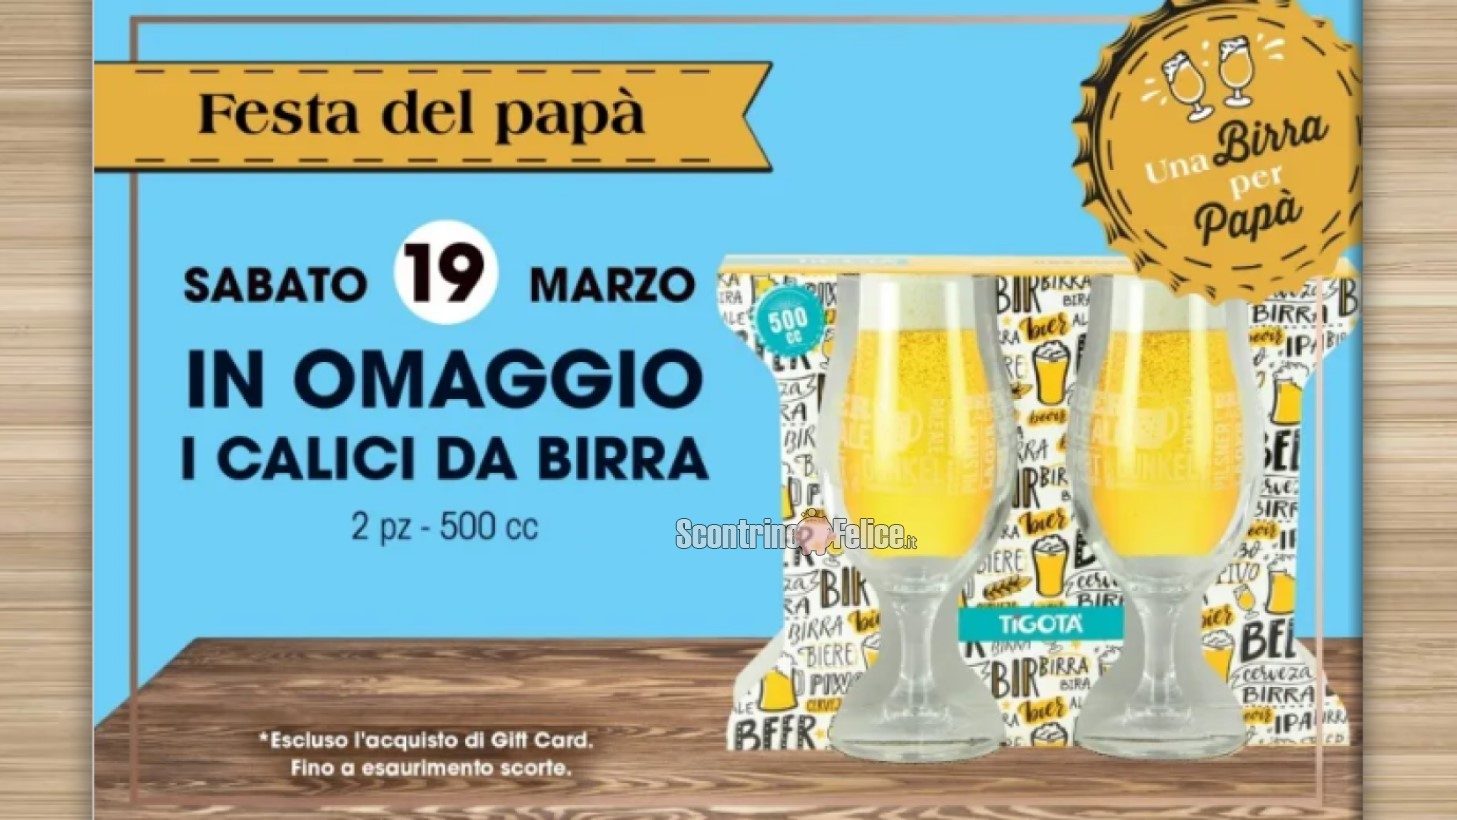 Festa del Papà 2022 da Tigotà: in omaggio 2 calici da birra